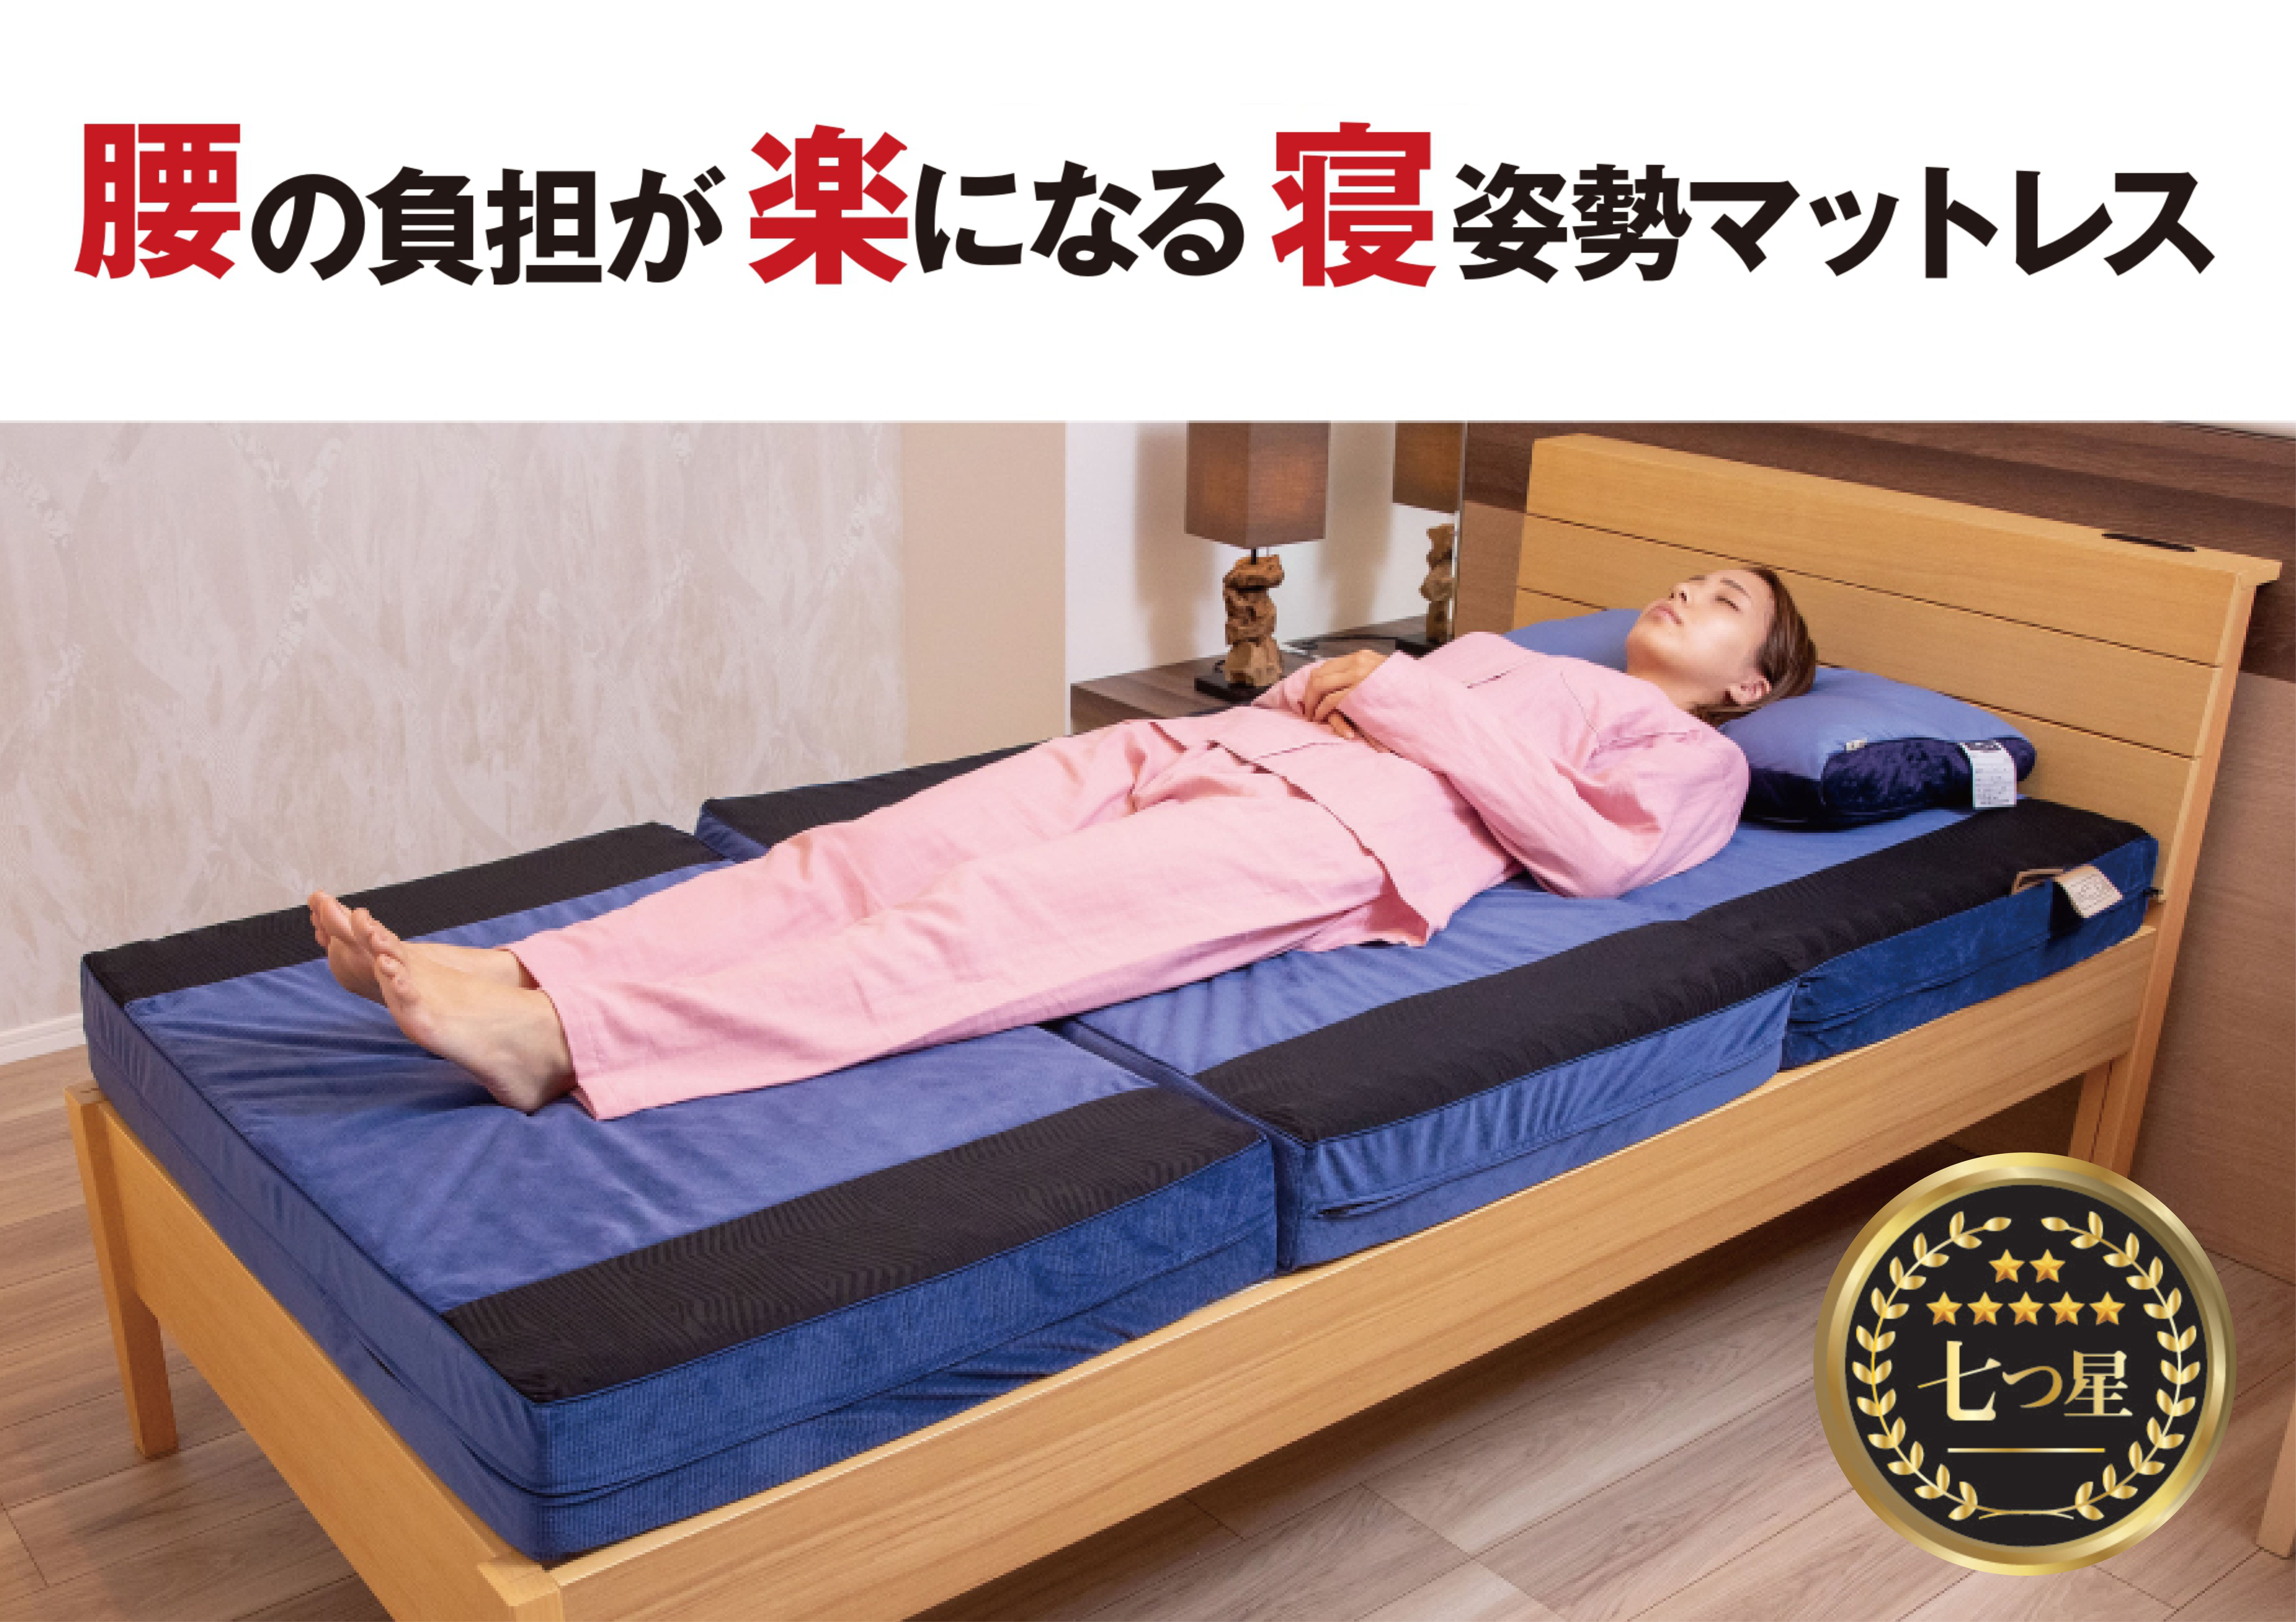 パラマウントベッド体感フェア〜INTIME3000/Active Sleep Bed